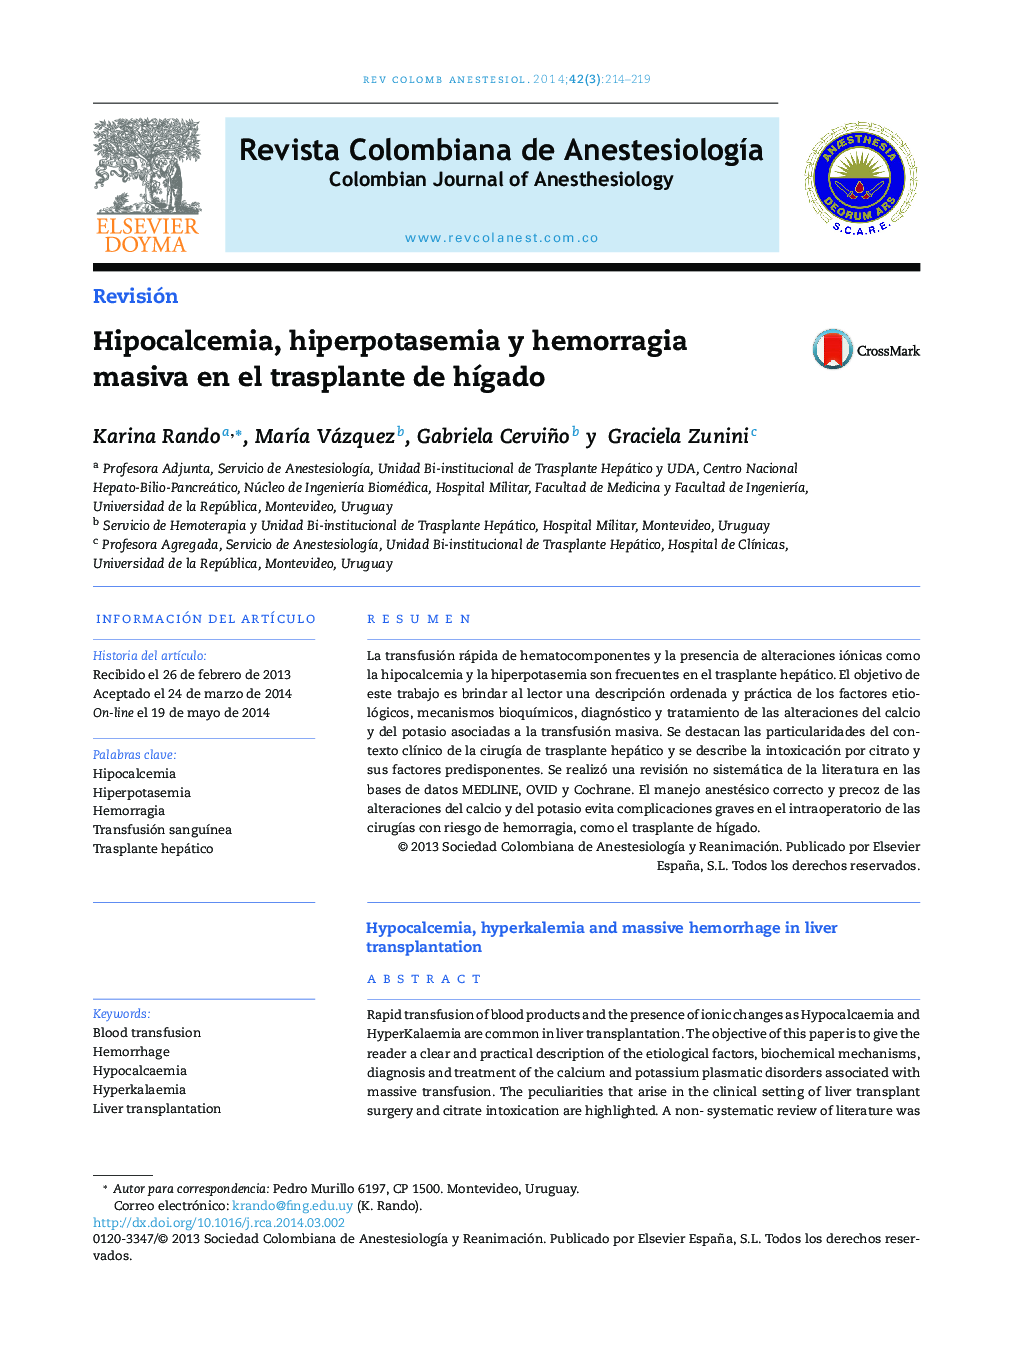 Hipocalcemia, hiperpotasemia y hemorragia masiva en el trasplante de hígado